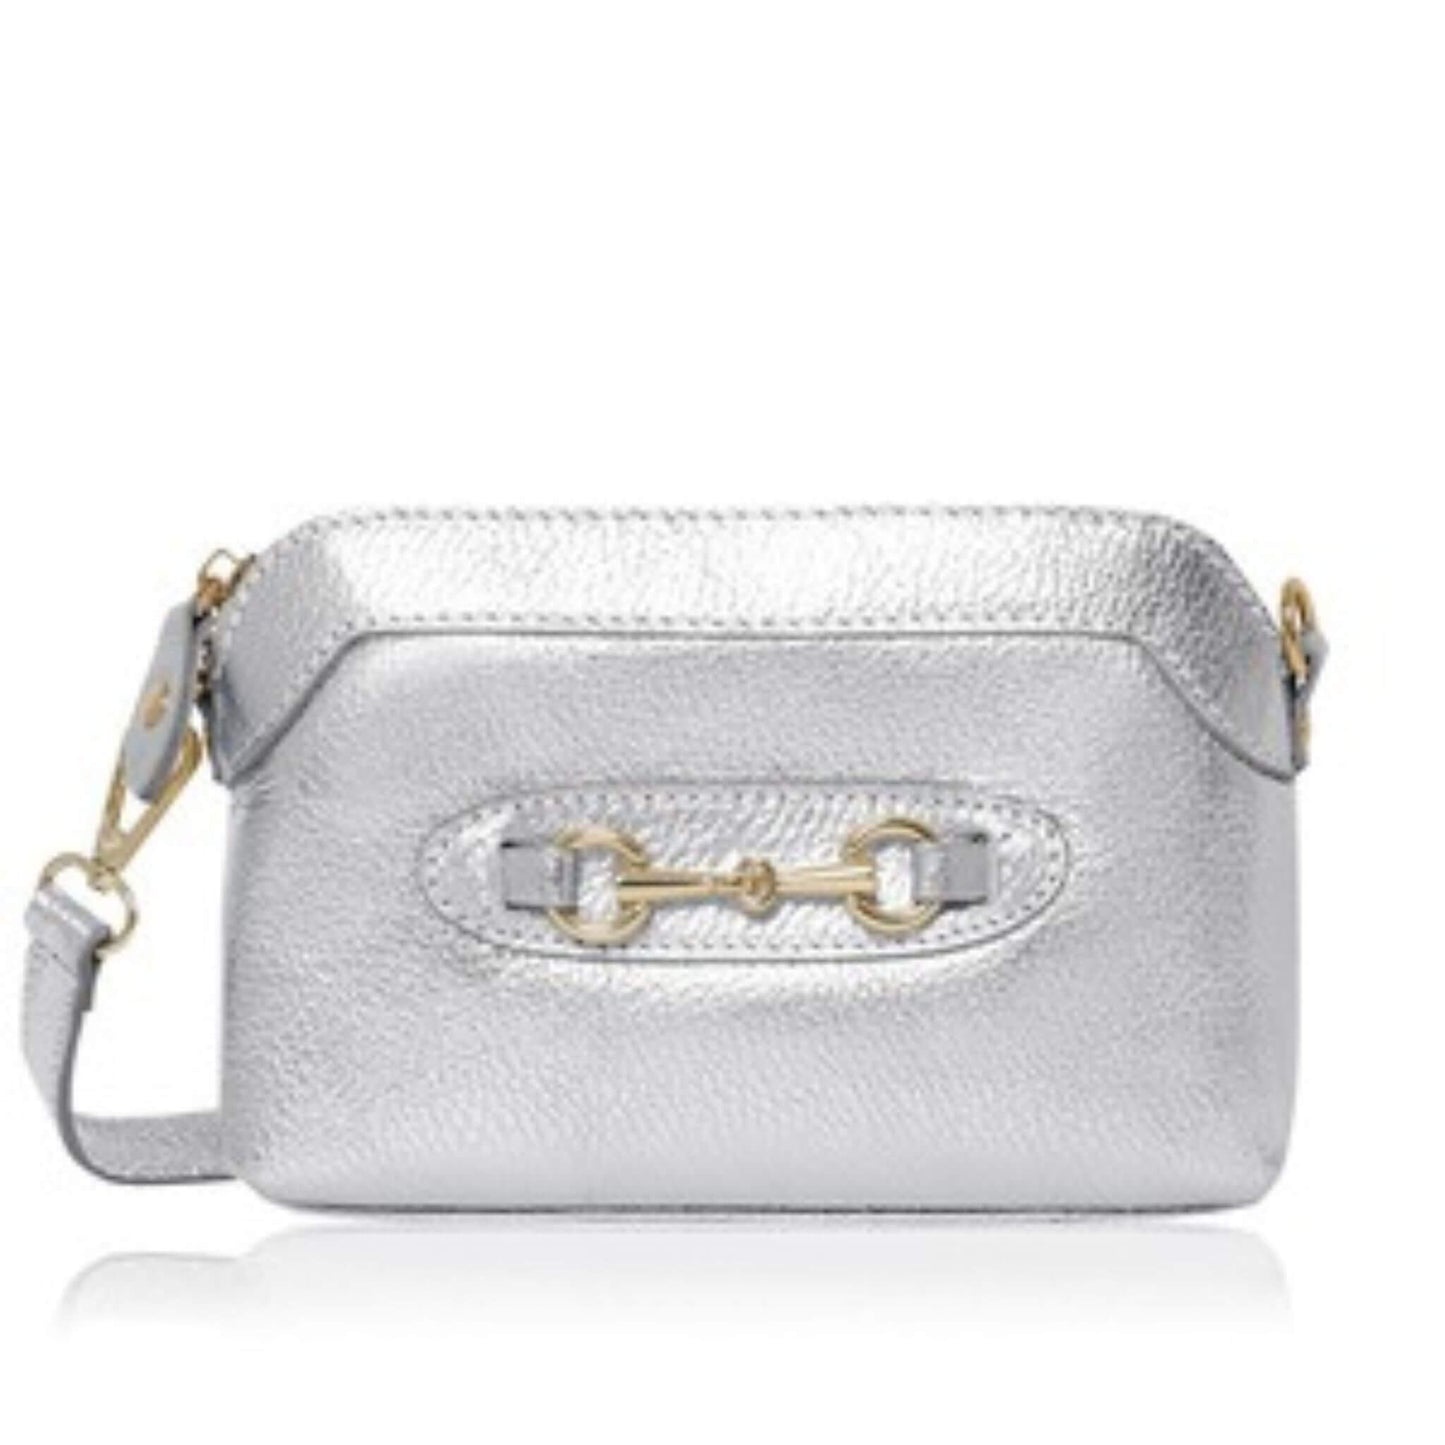 Sofia - Silver Leather Bag